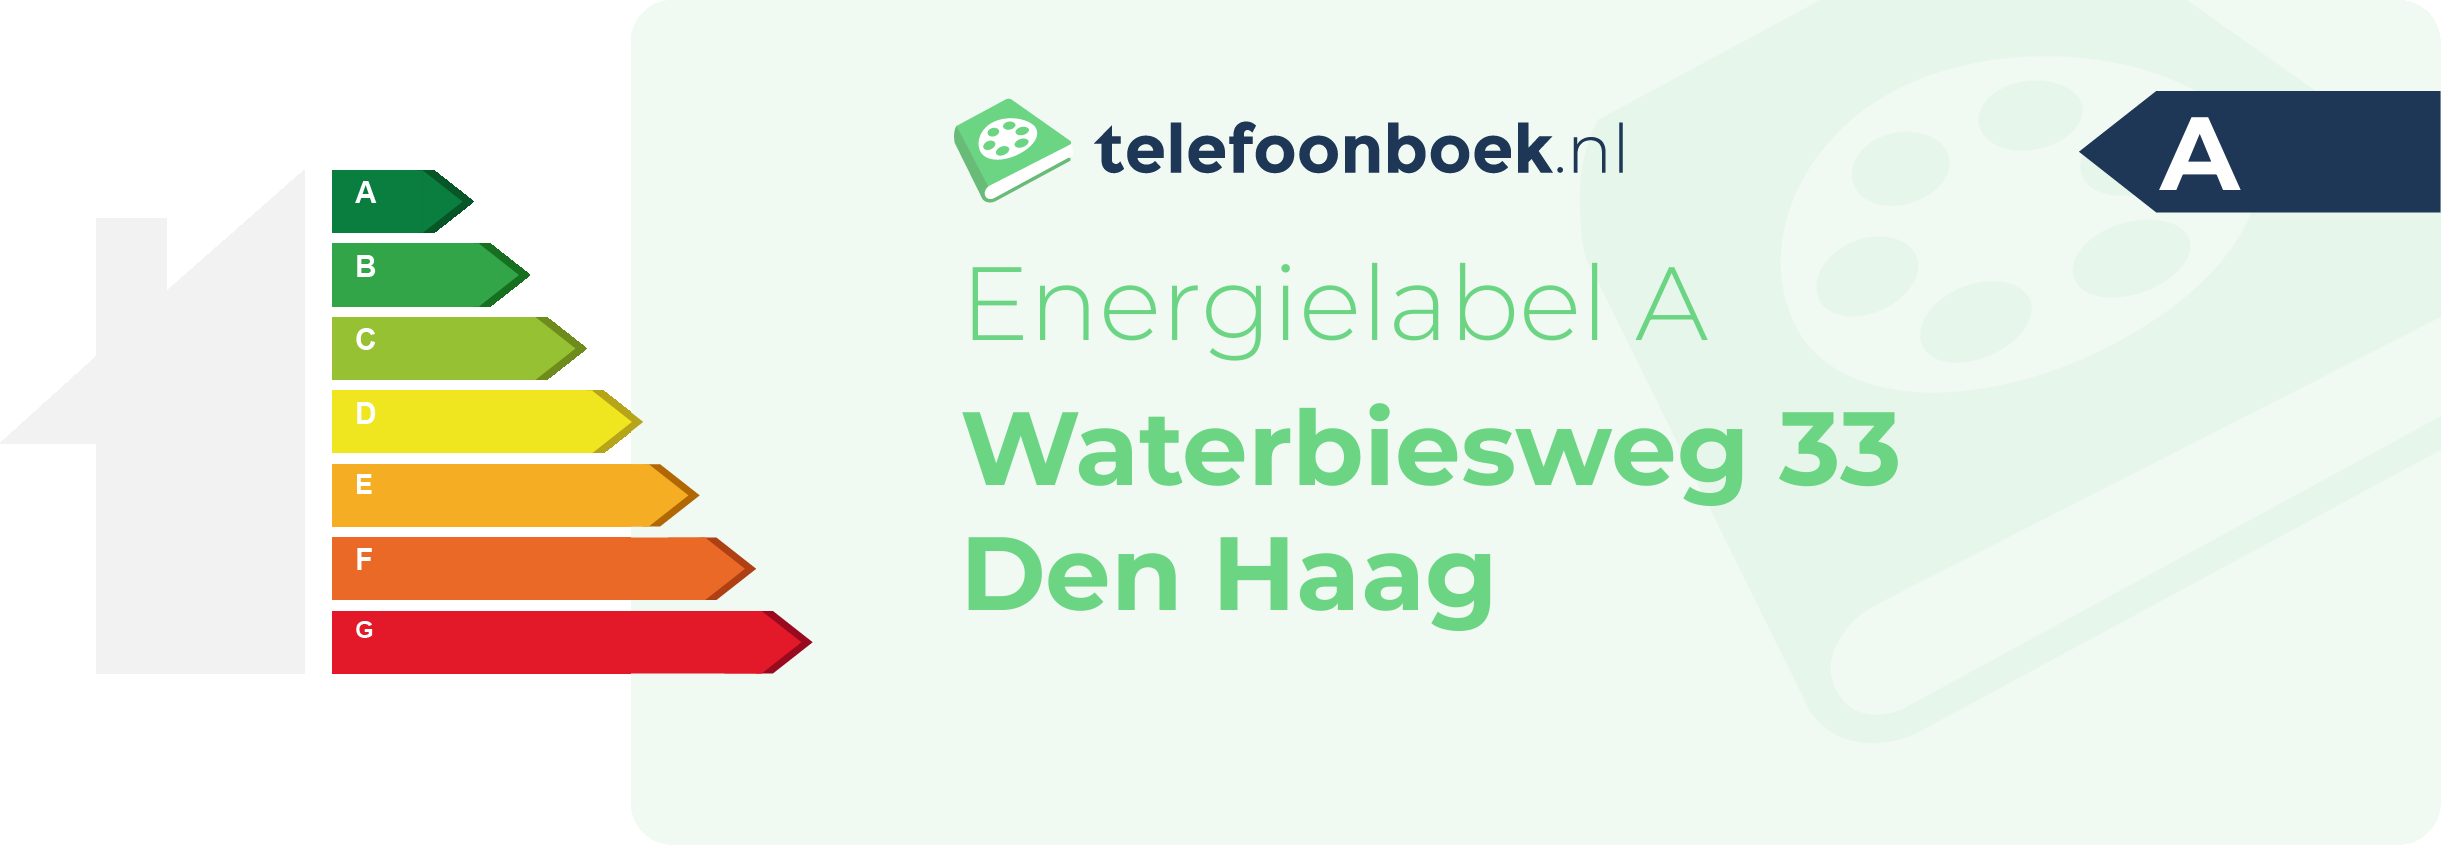 Energielabel Waterbiesweg 33 Den Haag